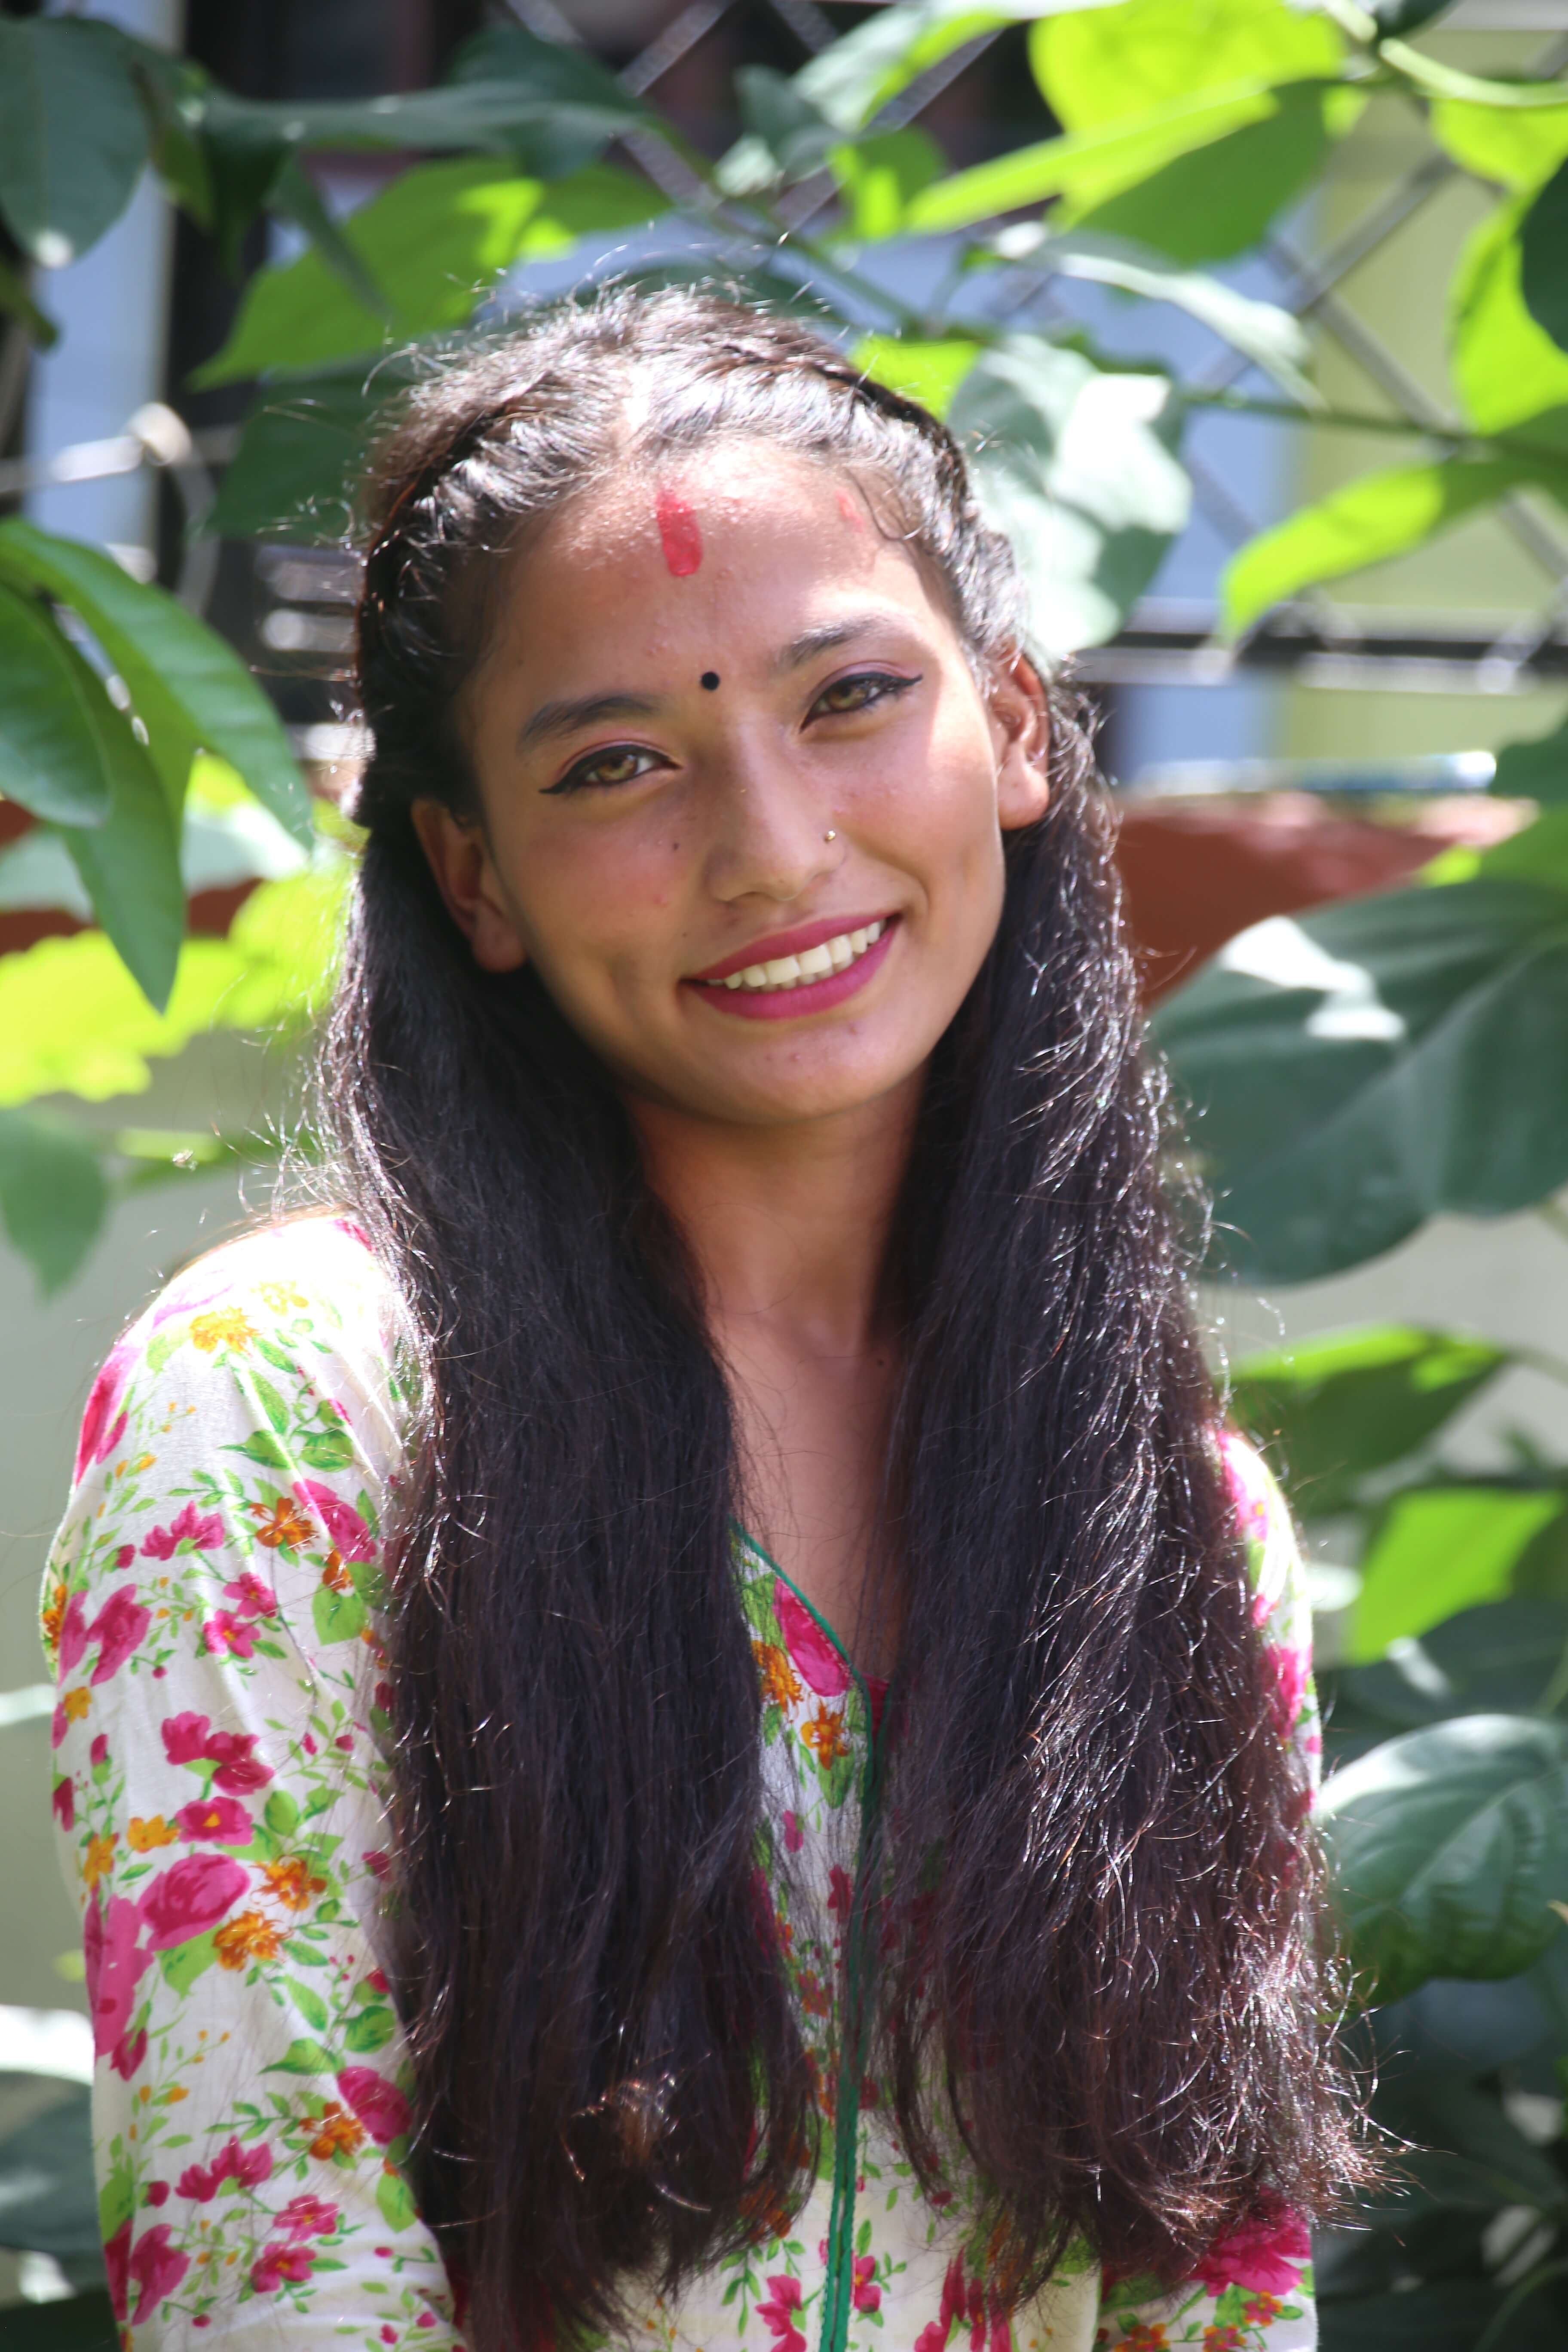 New Student at Khushi Ghar! Meet Pabitra